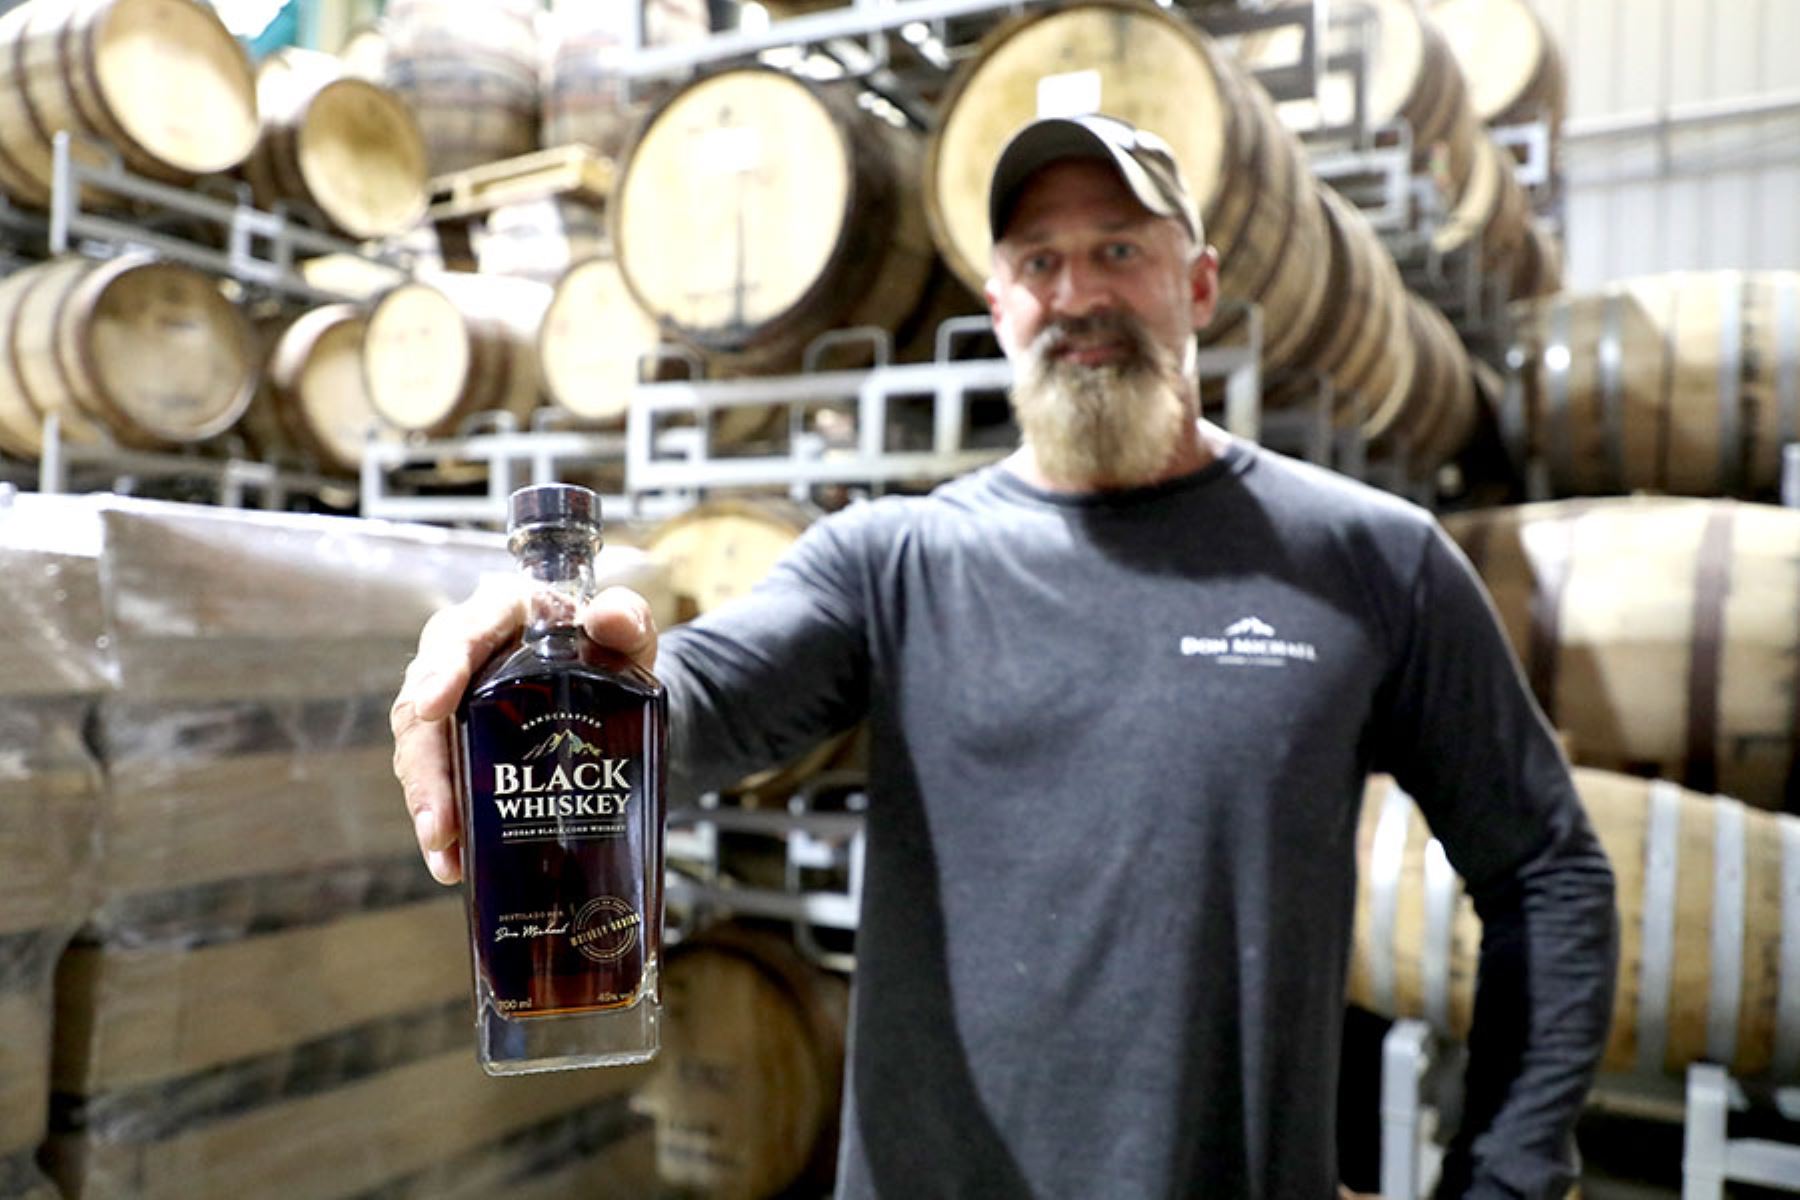 El Black Whiskey ha sido creado por el estadounidense Michael Kuryla, quien reside desde hace diez años en el Perú.